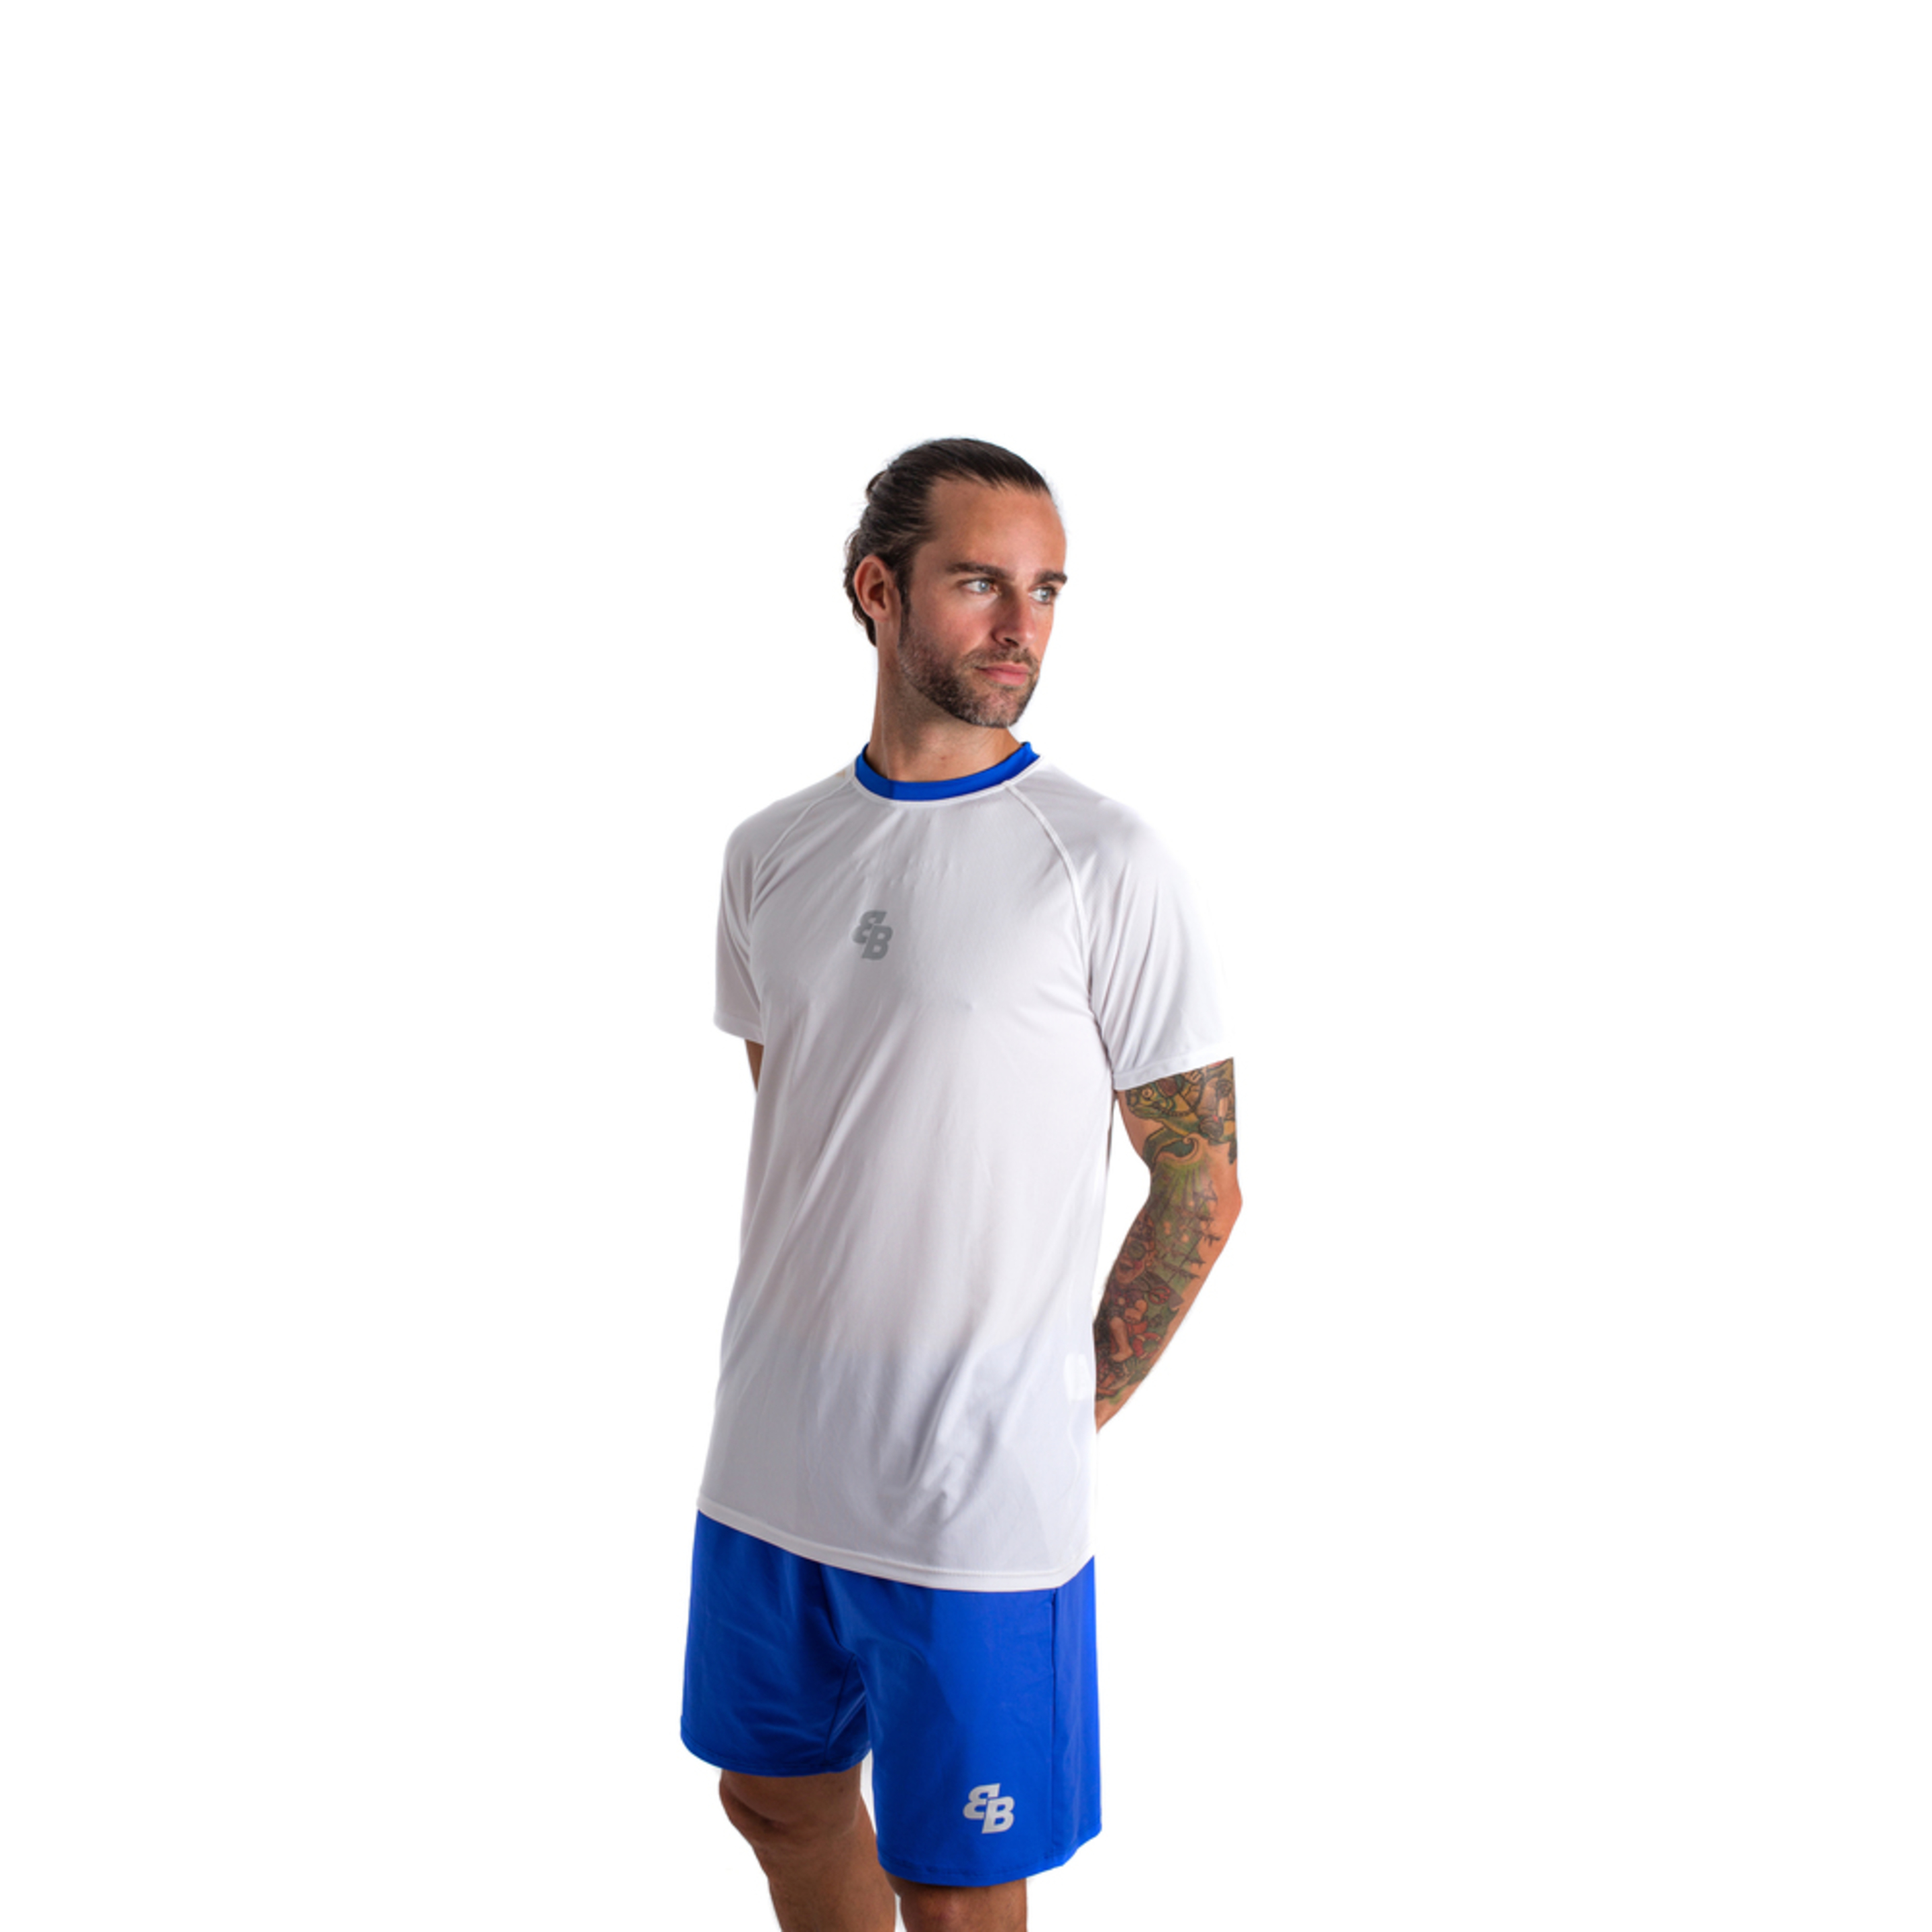 Camiseta De Pádel Y Tenis Bb By Belénberbel Marx - Blanco/Azul - Ropa Deportiva Hombre  MKP